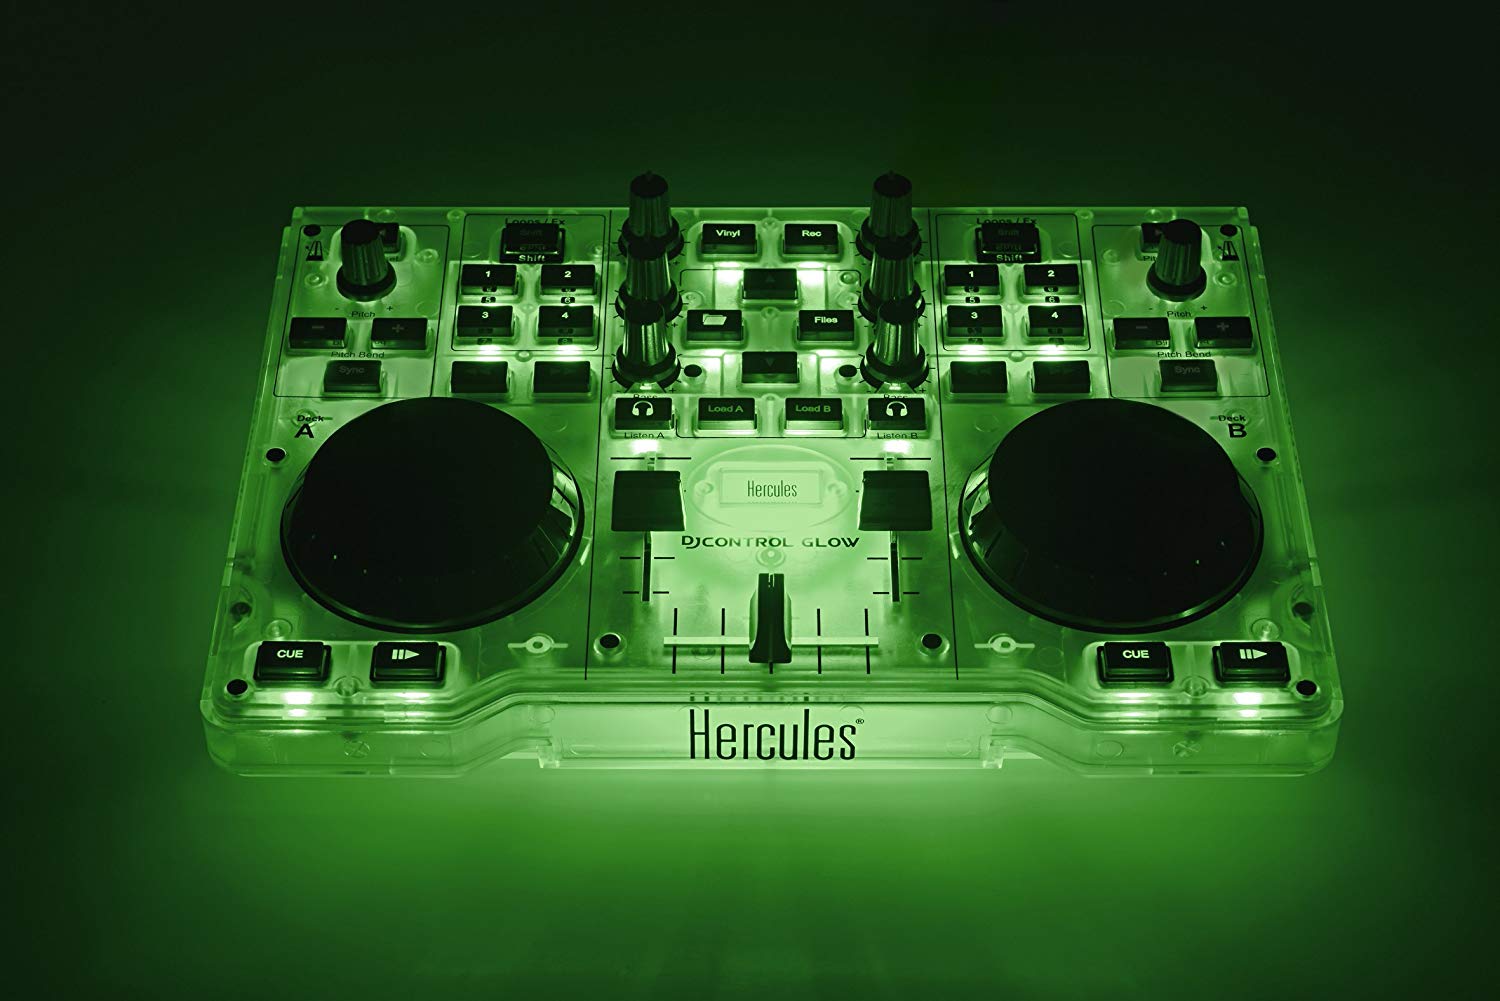 Hercules dj control compact